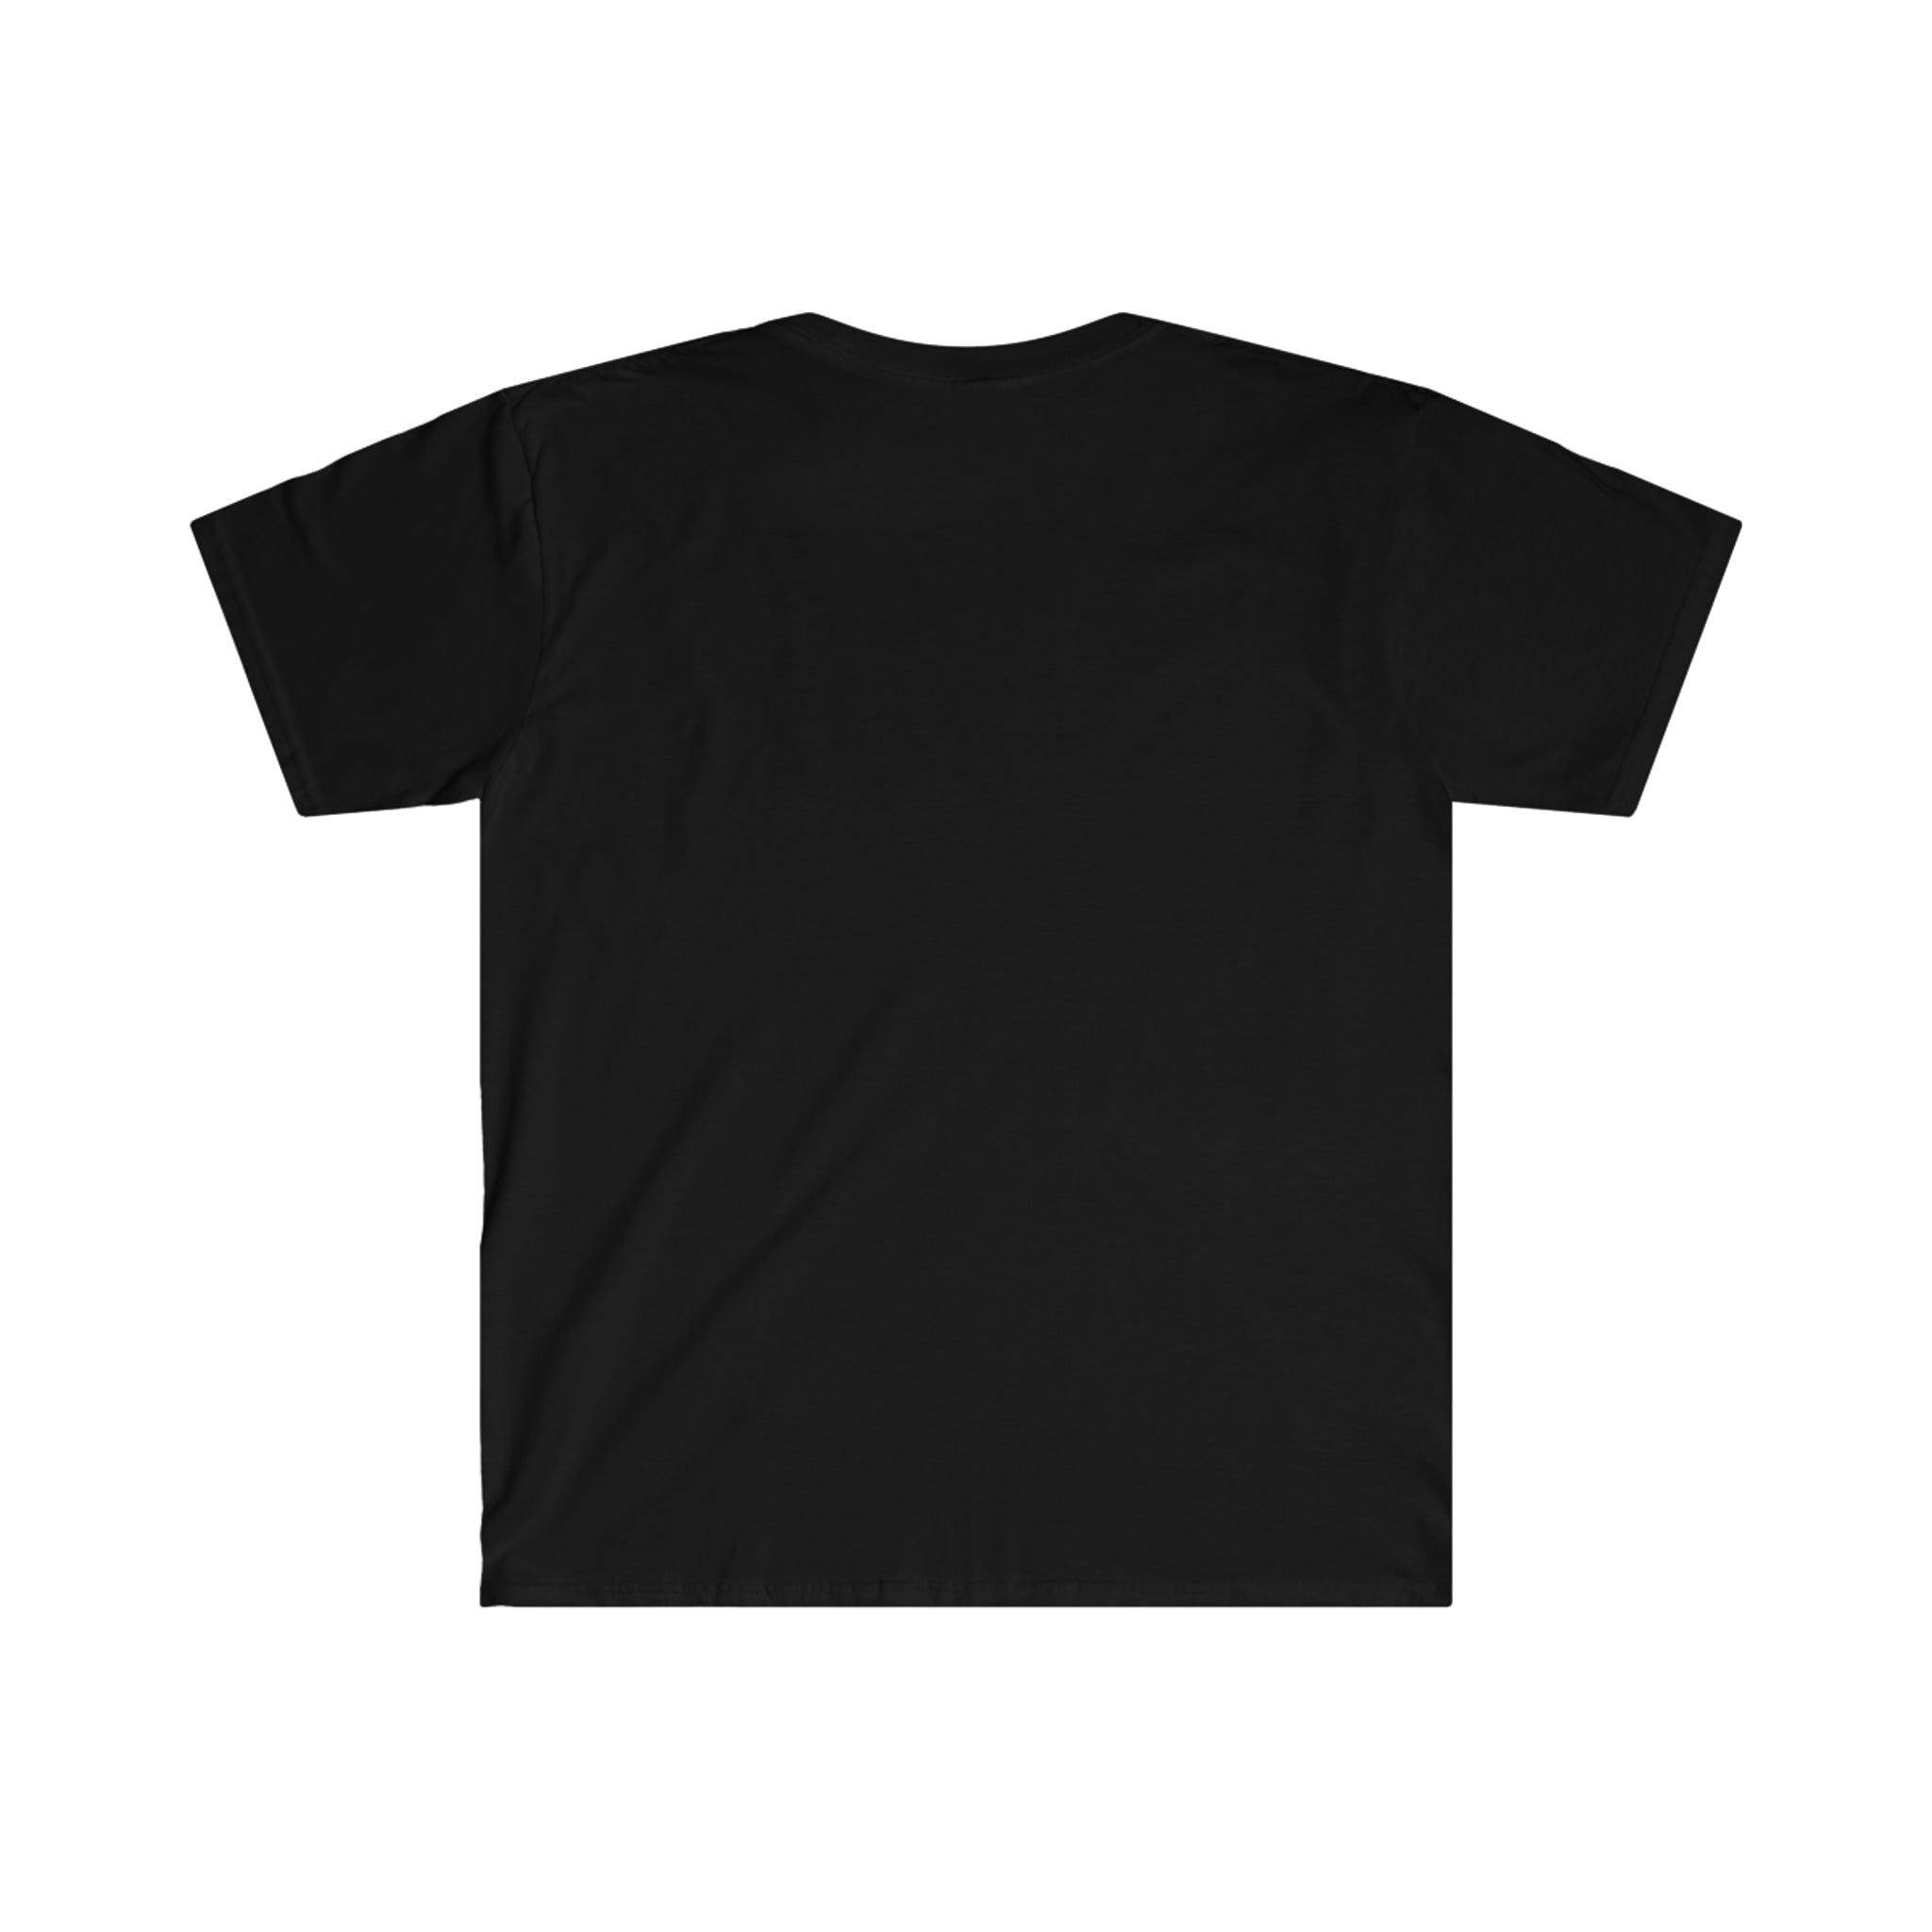 Motivation01/Unisex Softstyle T-Shirt